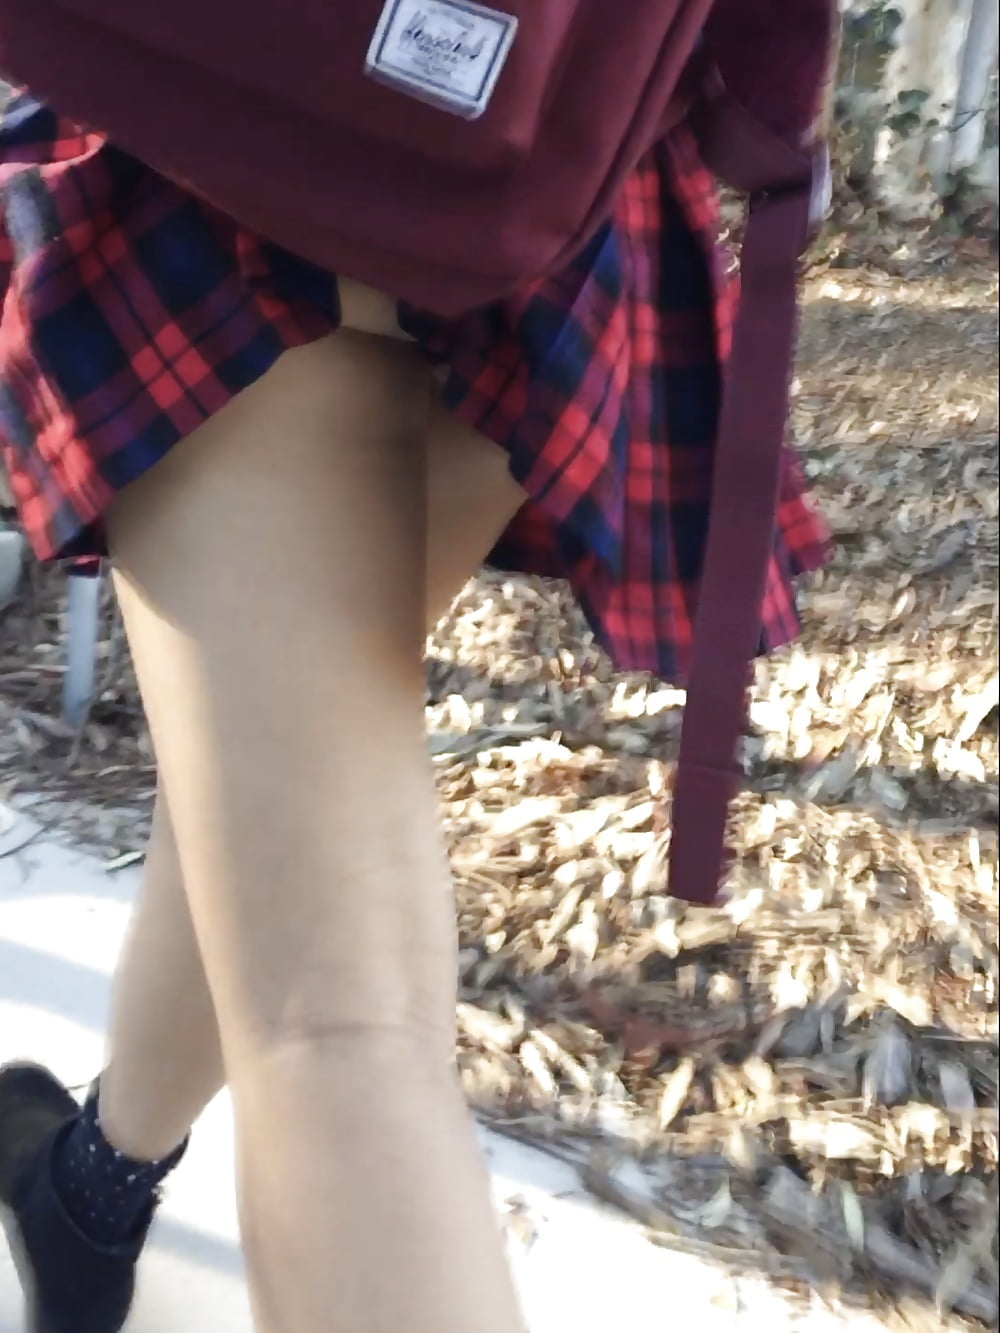 Skirt_caught_on_backpack (6/6)